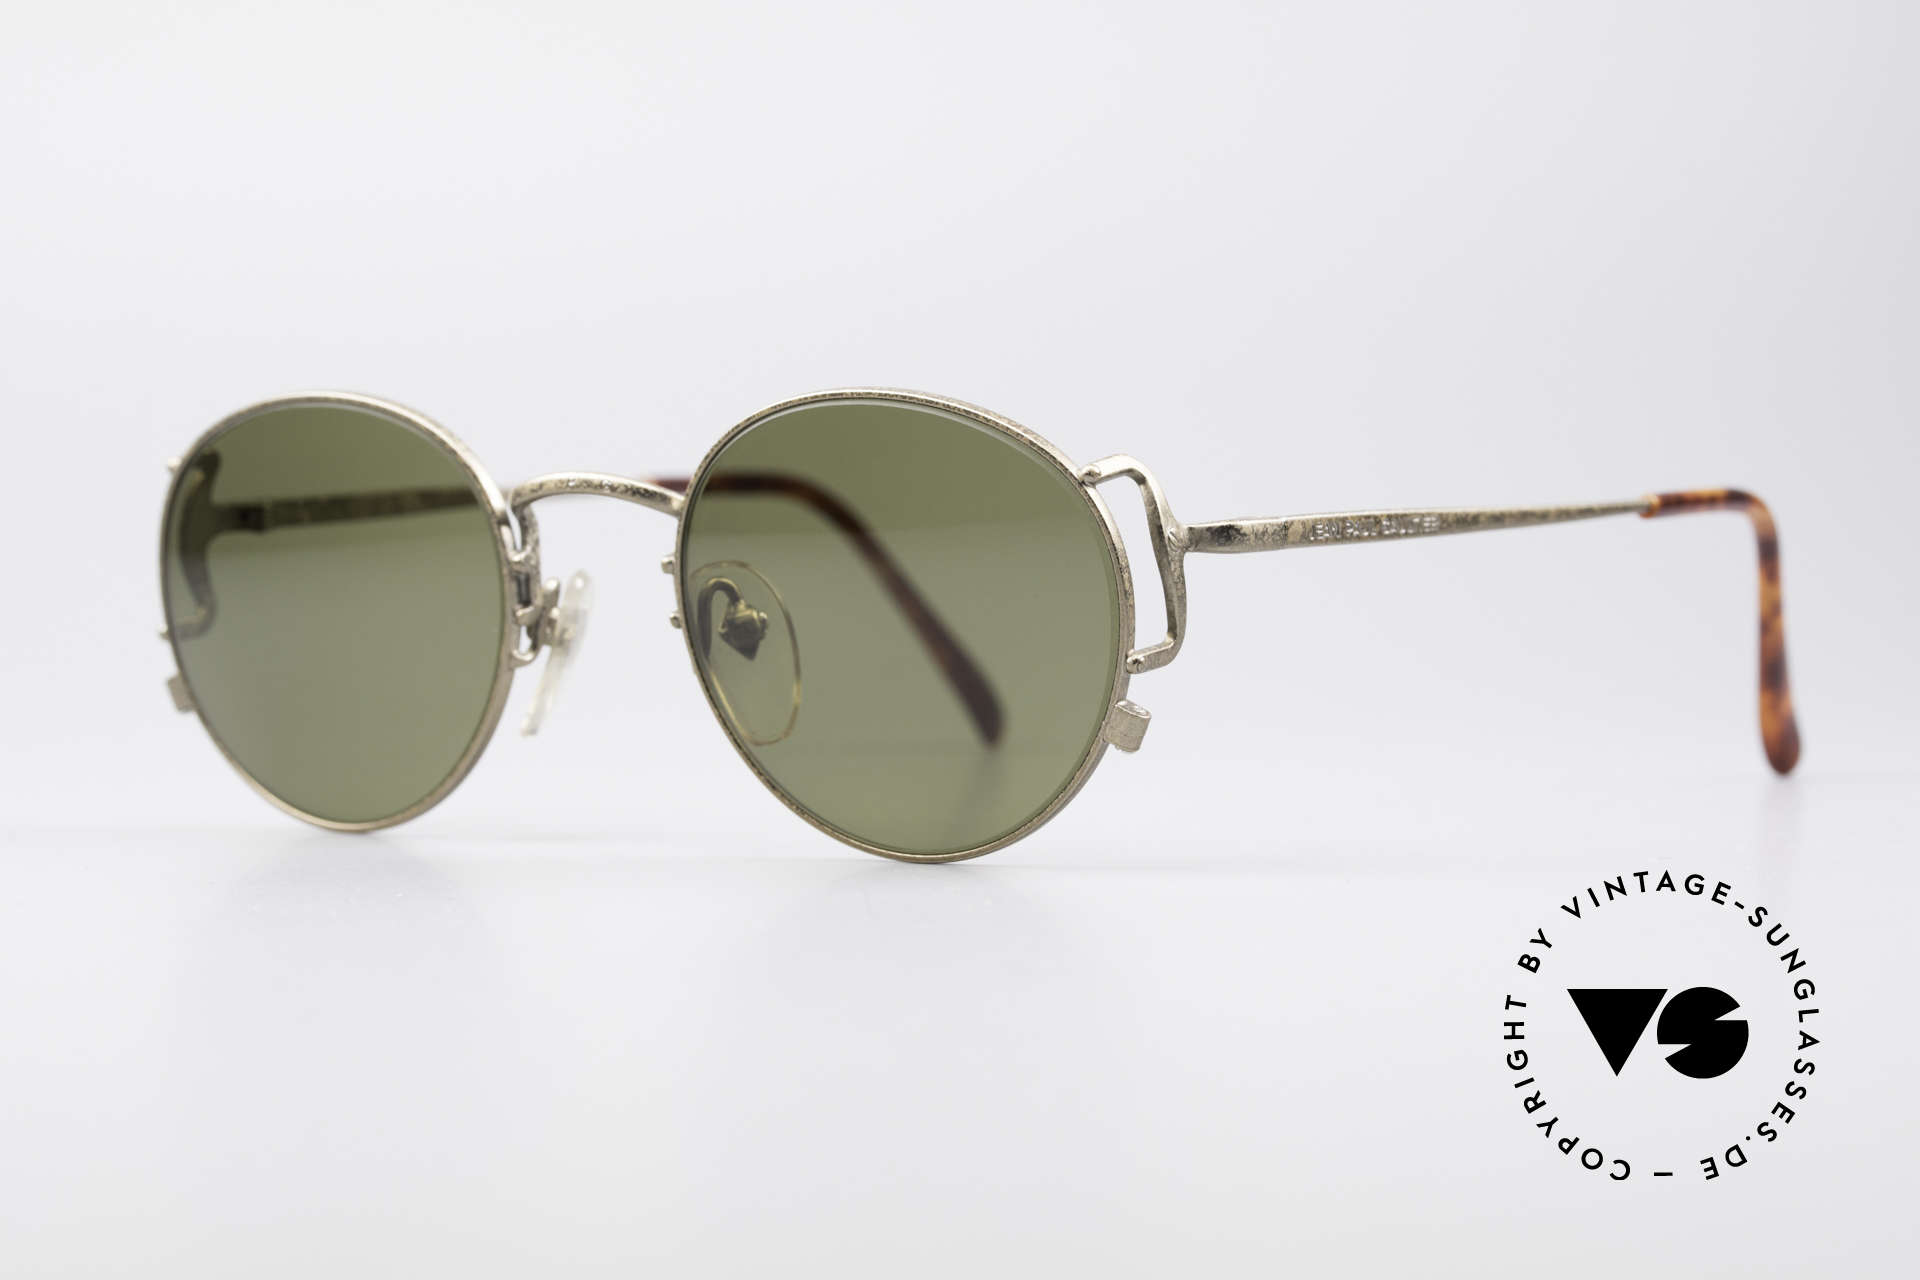 Jean Paul Gaultier 55-3178 Polarized Sun Lenses, POLARIZED sun lenses for 100% UV protection, Made for Men and Women